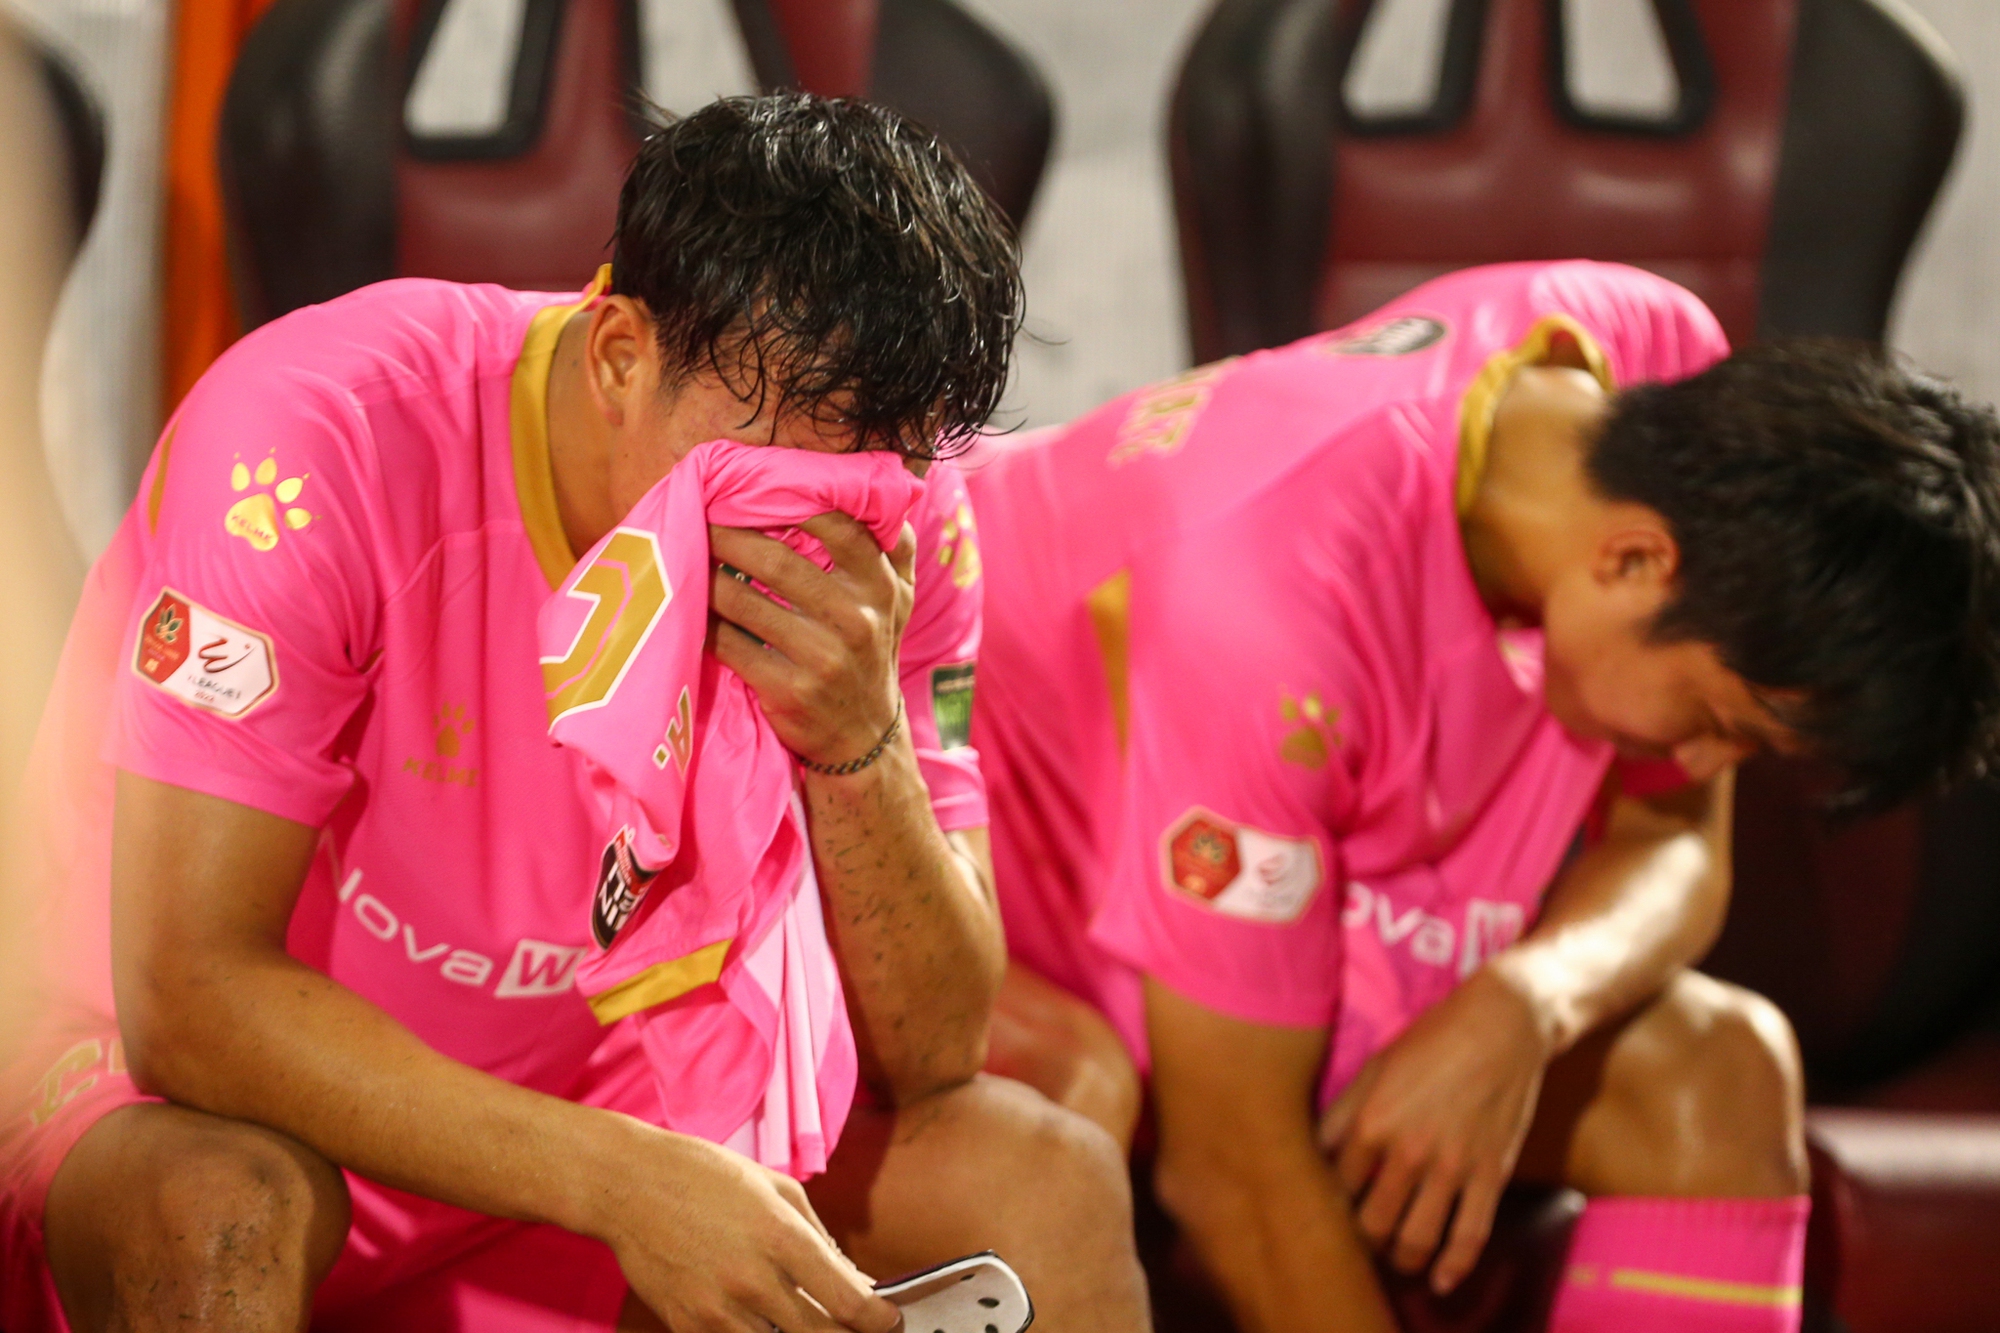 Giành chiến thắng vẫn xuống hạng, cầu thủ Sài Gòn FC buồn bã - Ảnh 1.